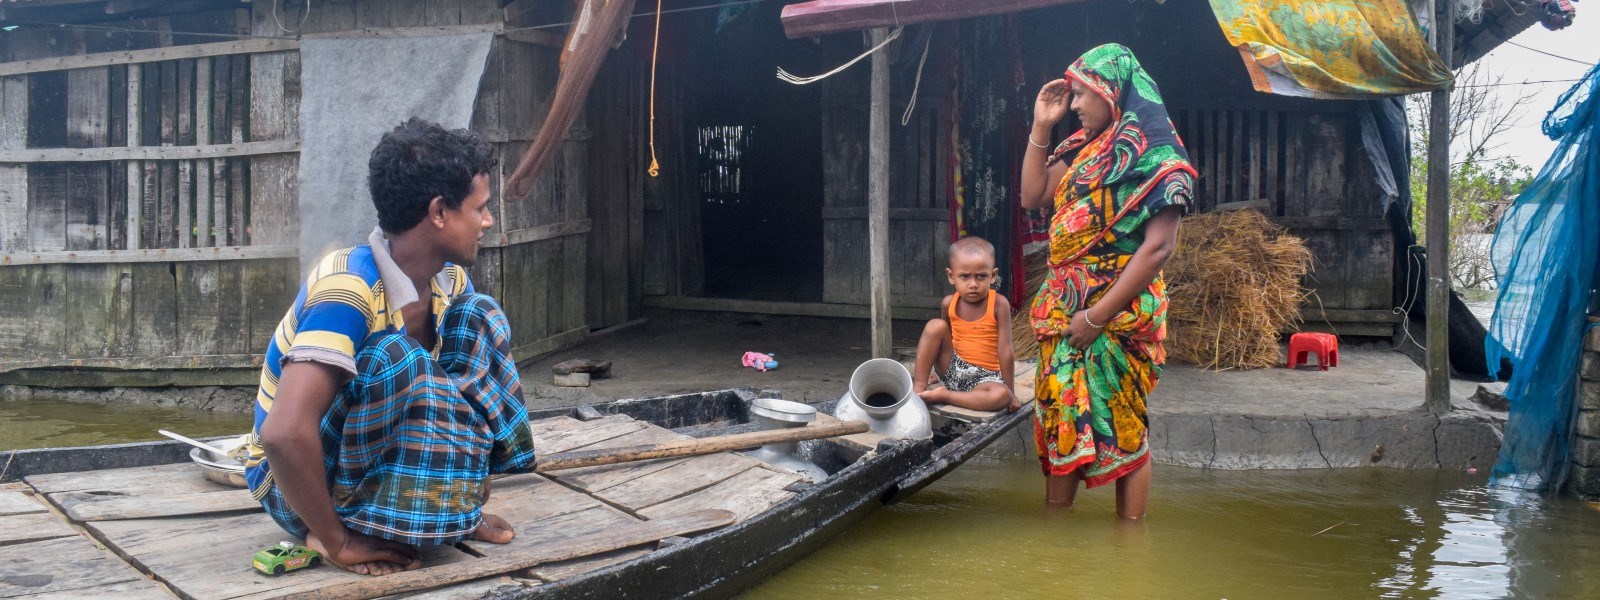 En mann og et lite barn sitter i en båt som ligger utenfor et hus. En kvinne står i vannet.